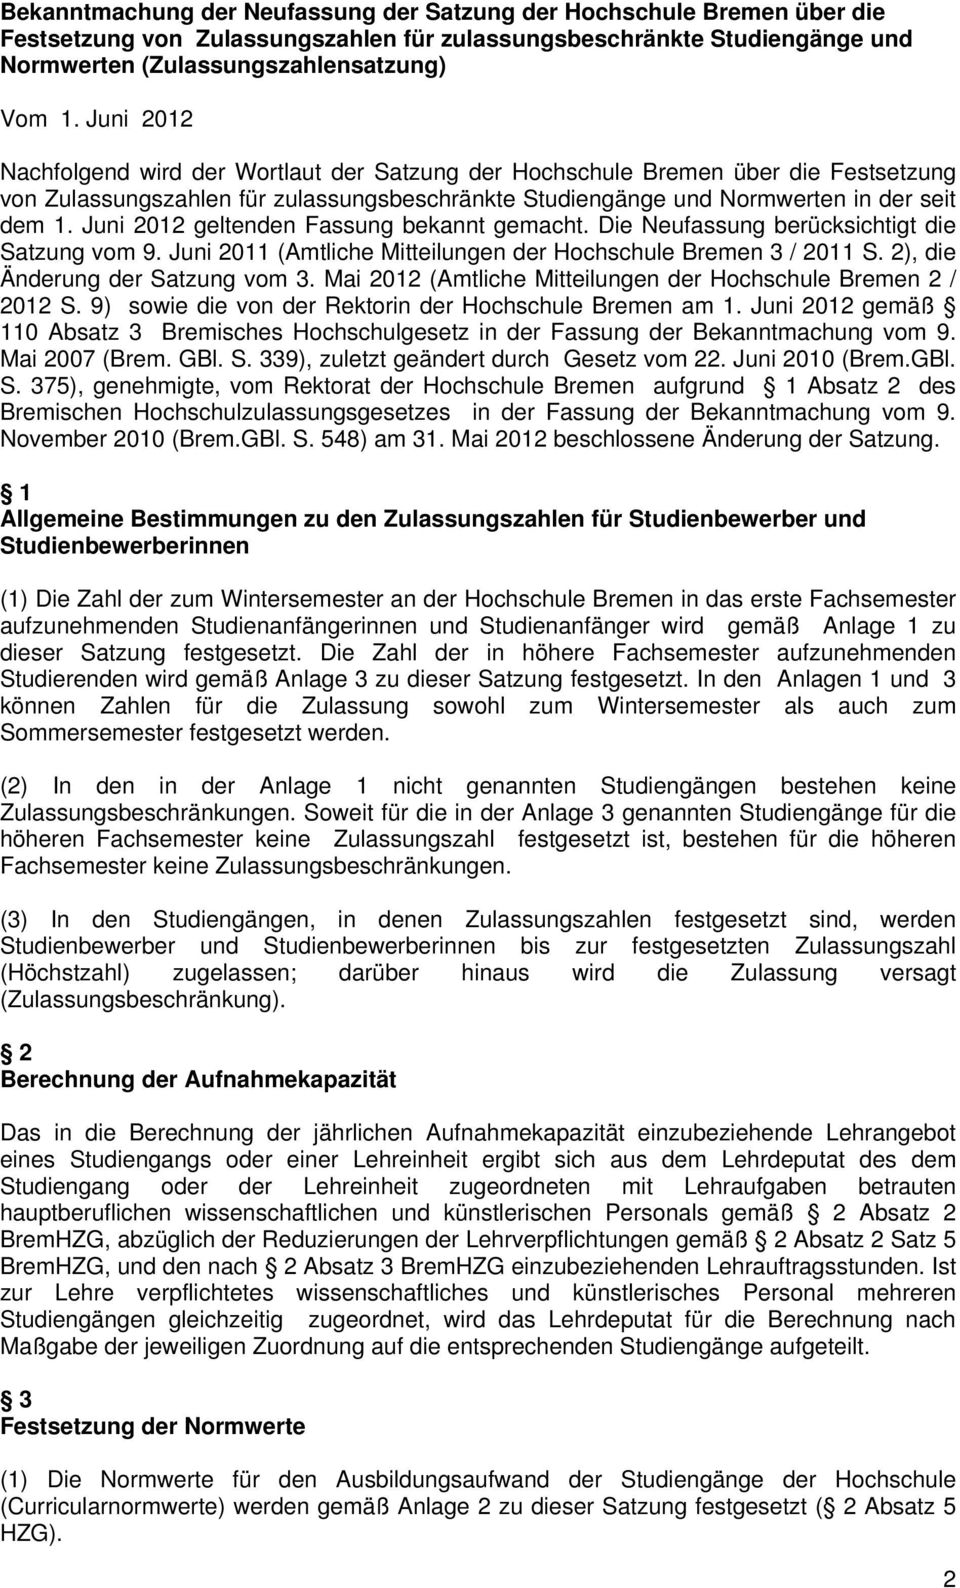 Juni 2012 geltenden Fassung bekannt gemacht. Die Neufassung berücksichtigt die Satzung vom 9. Juni 2011 (Amtliche Mitteilungen der Hochschule Bremen 3 / 2011 S. 2), die Änderung der Satzung vom 3.